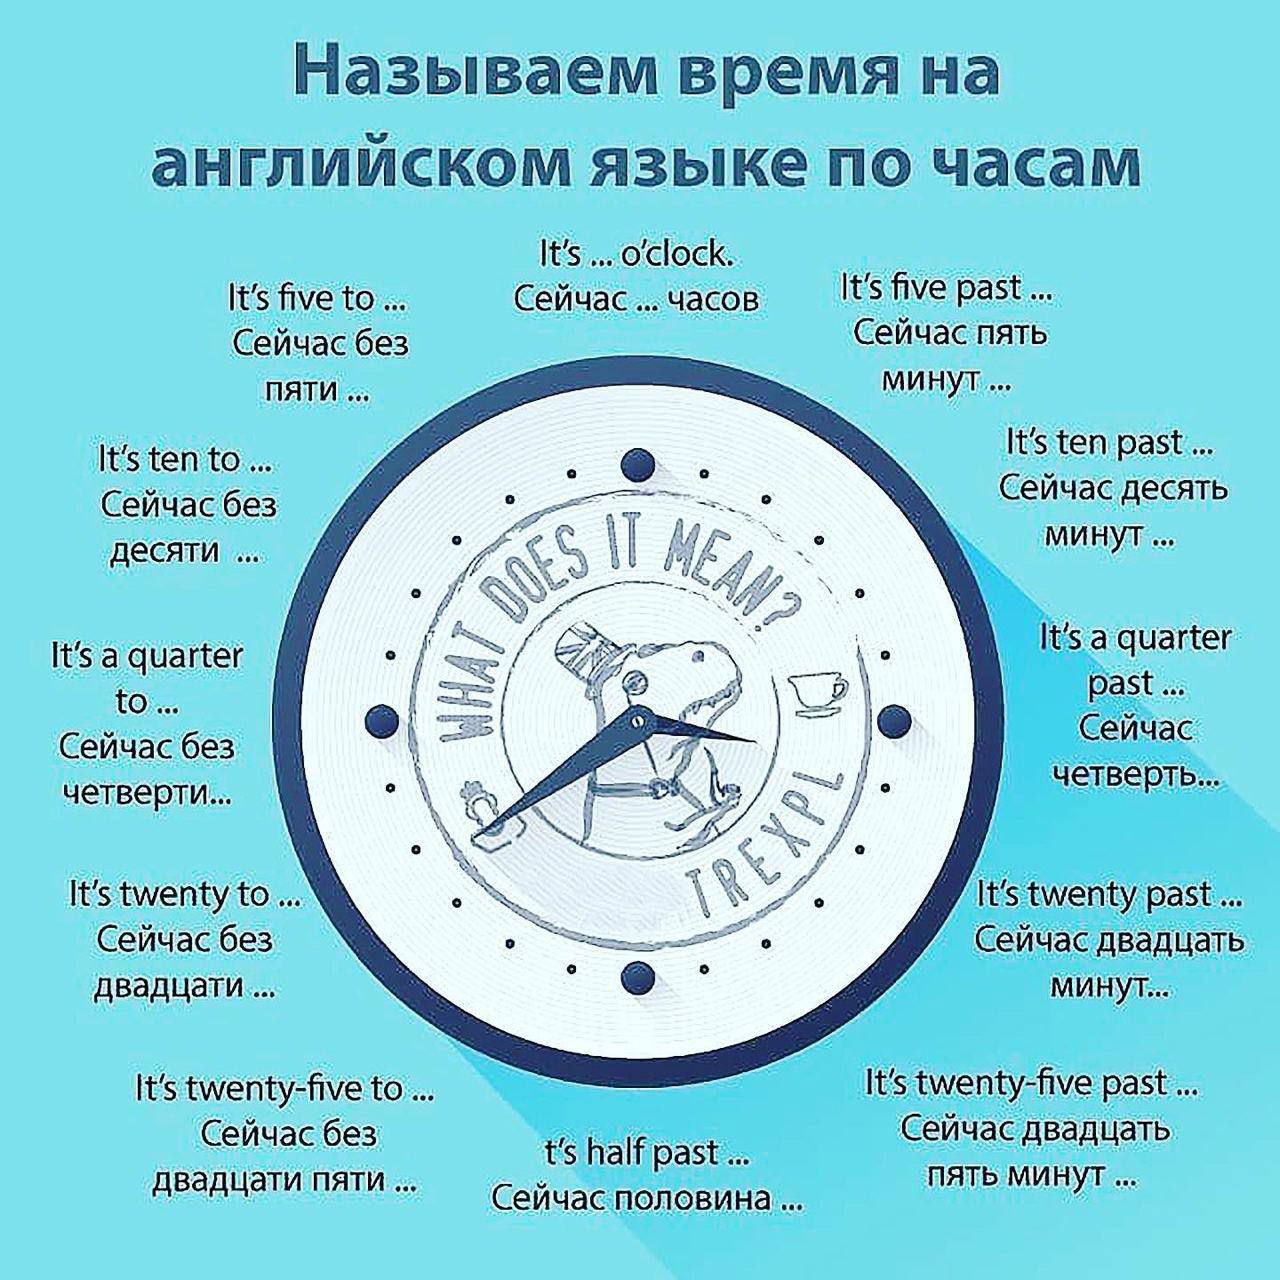 Как сделать русский язык на часах